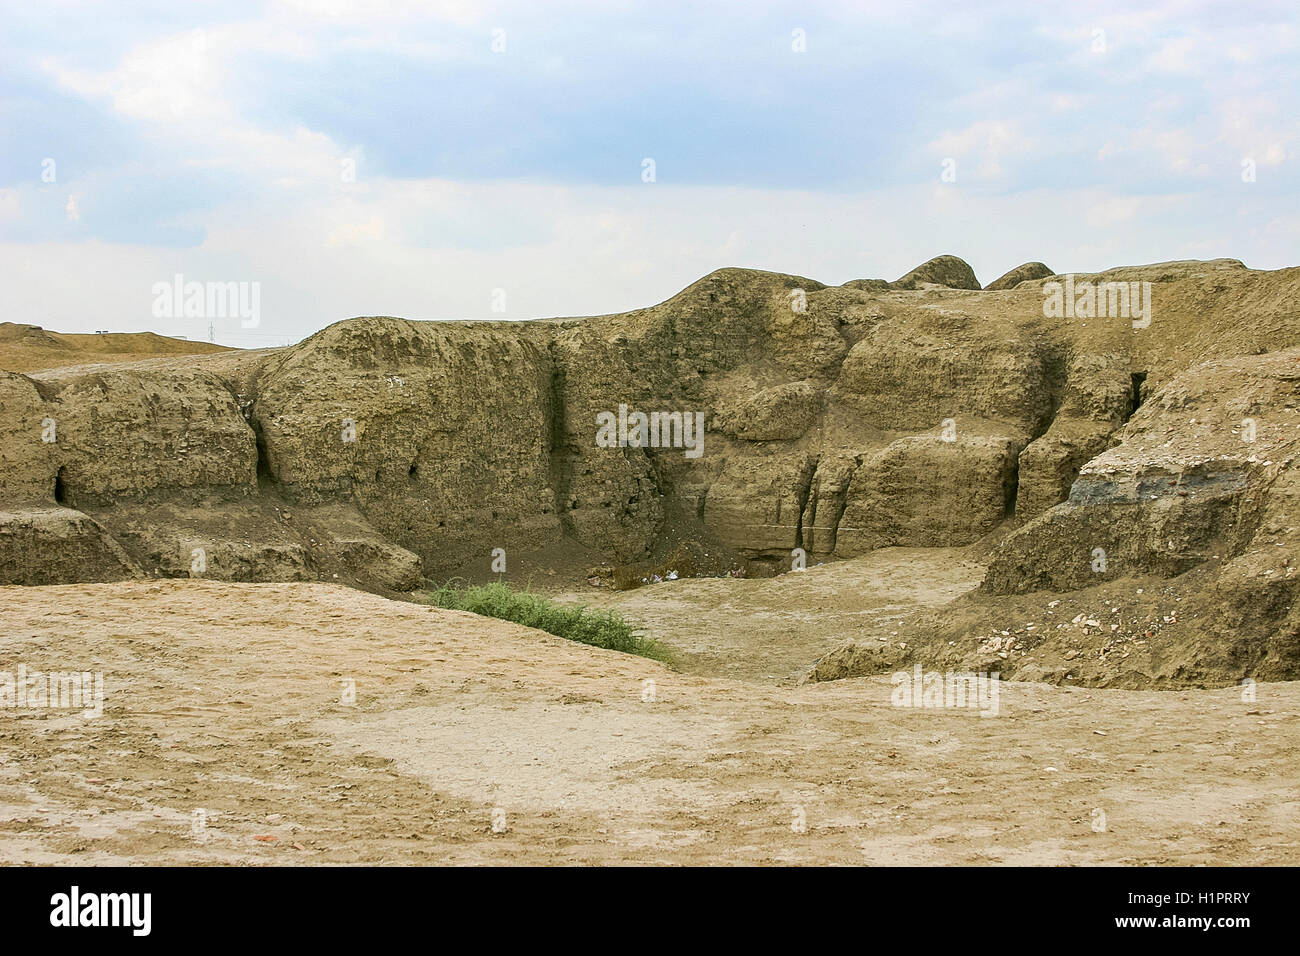 L'Egypte, Delta du Nil, Tanis, une zone d'excavation archéologique. Banque D'Images